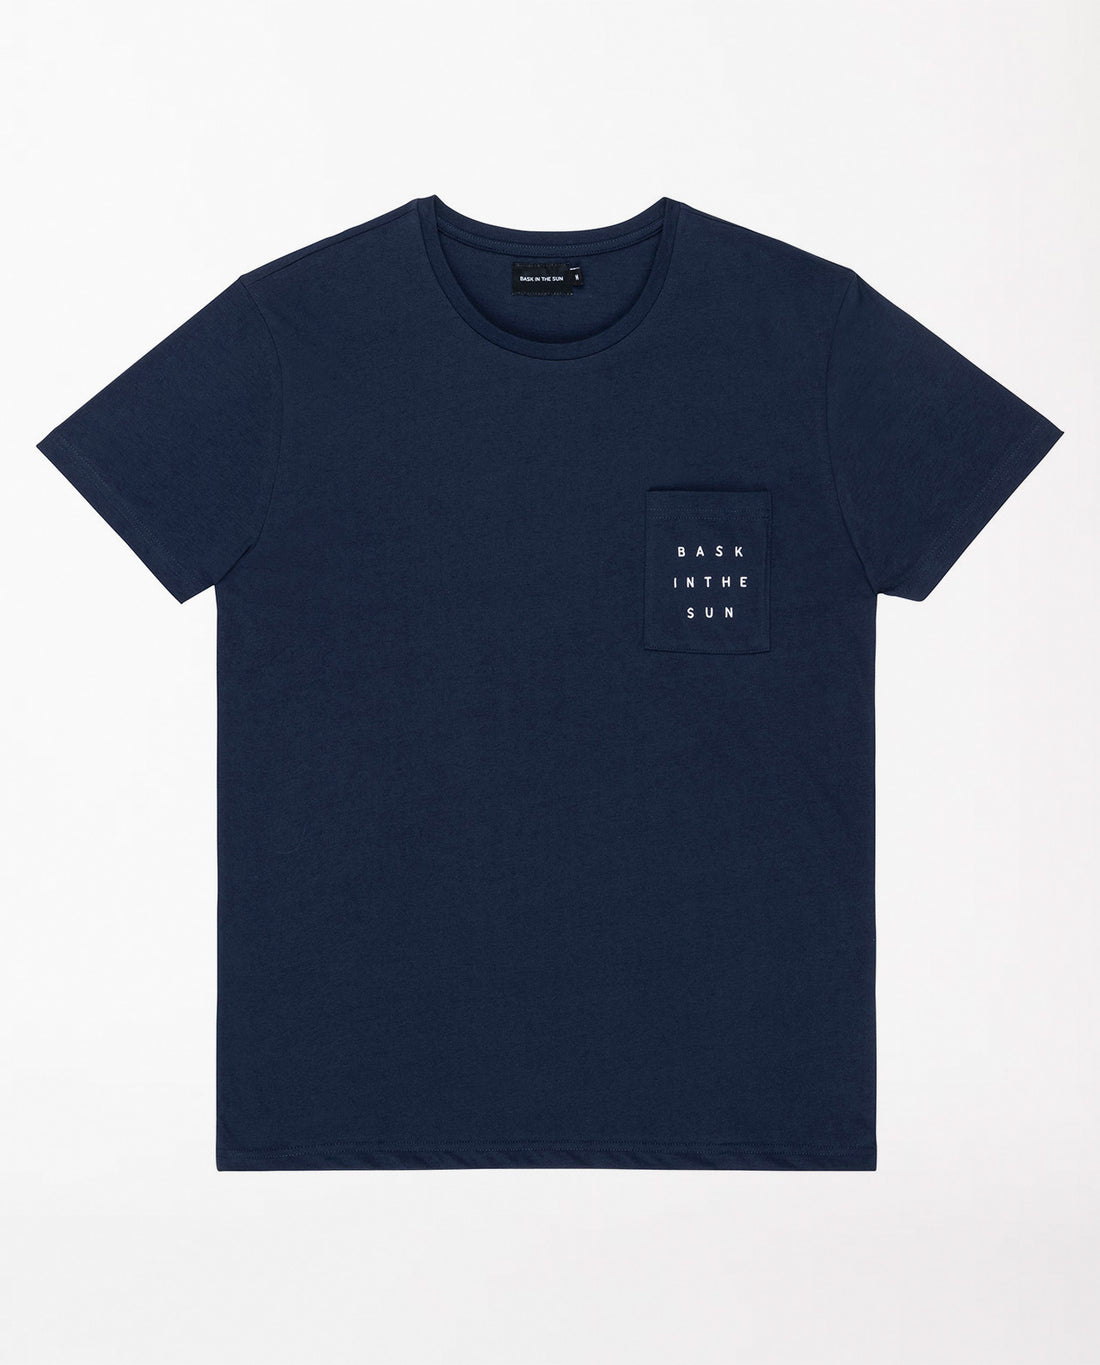 marché commun bask in the sun t-shirt manches courtes homme coton biologique éco-responsable imprimé palmier bleu marine